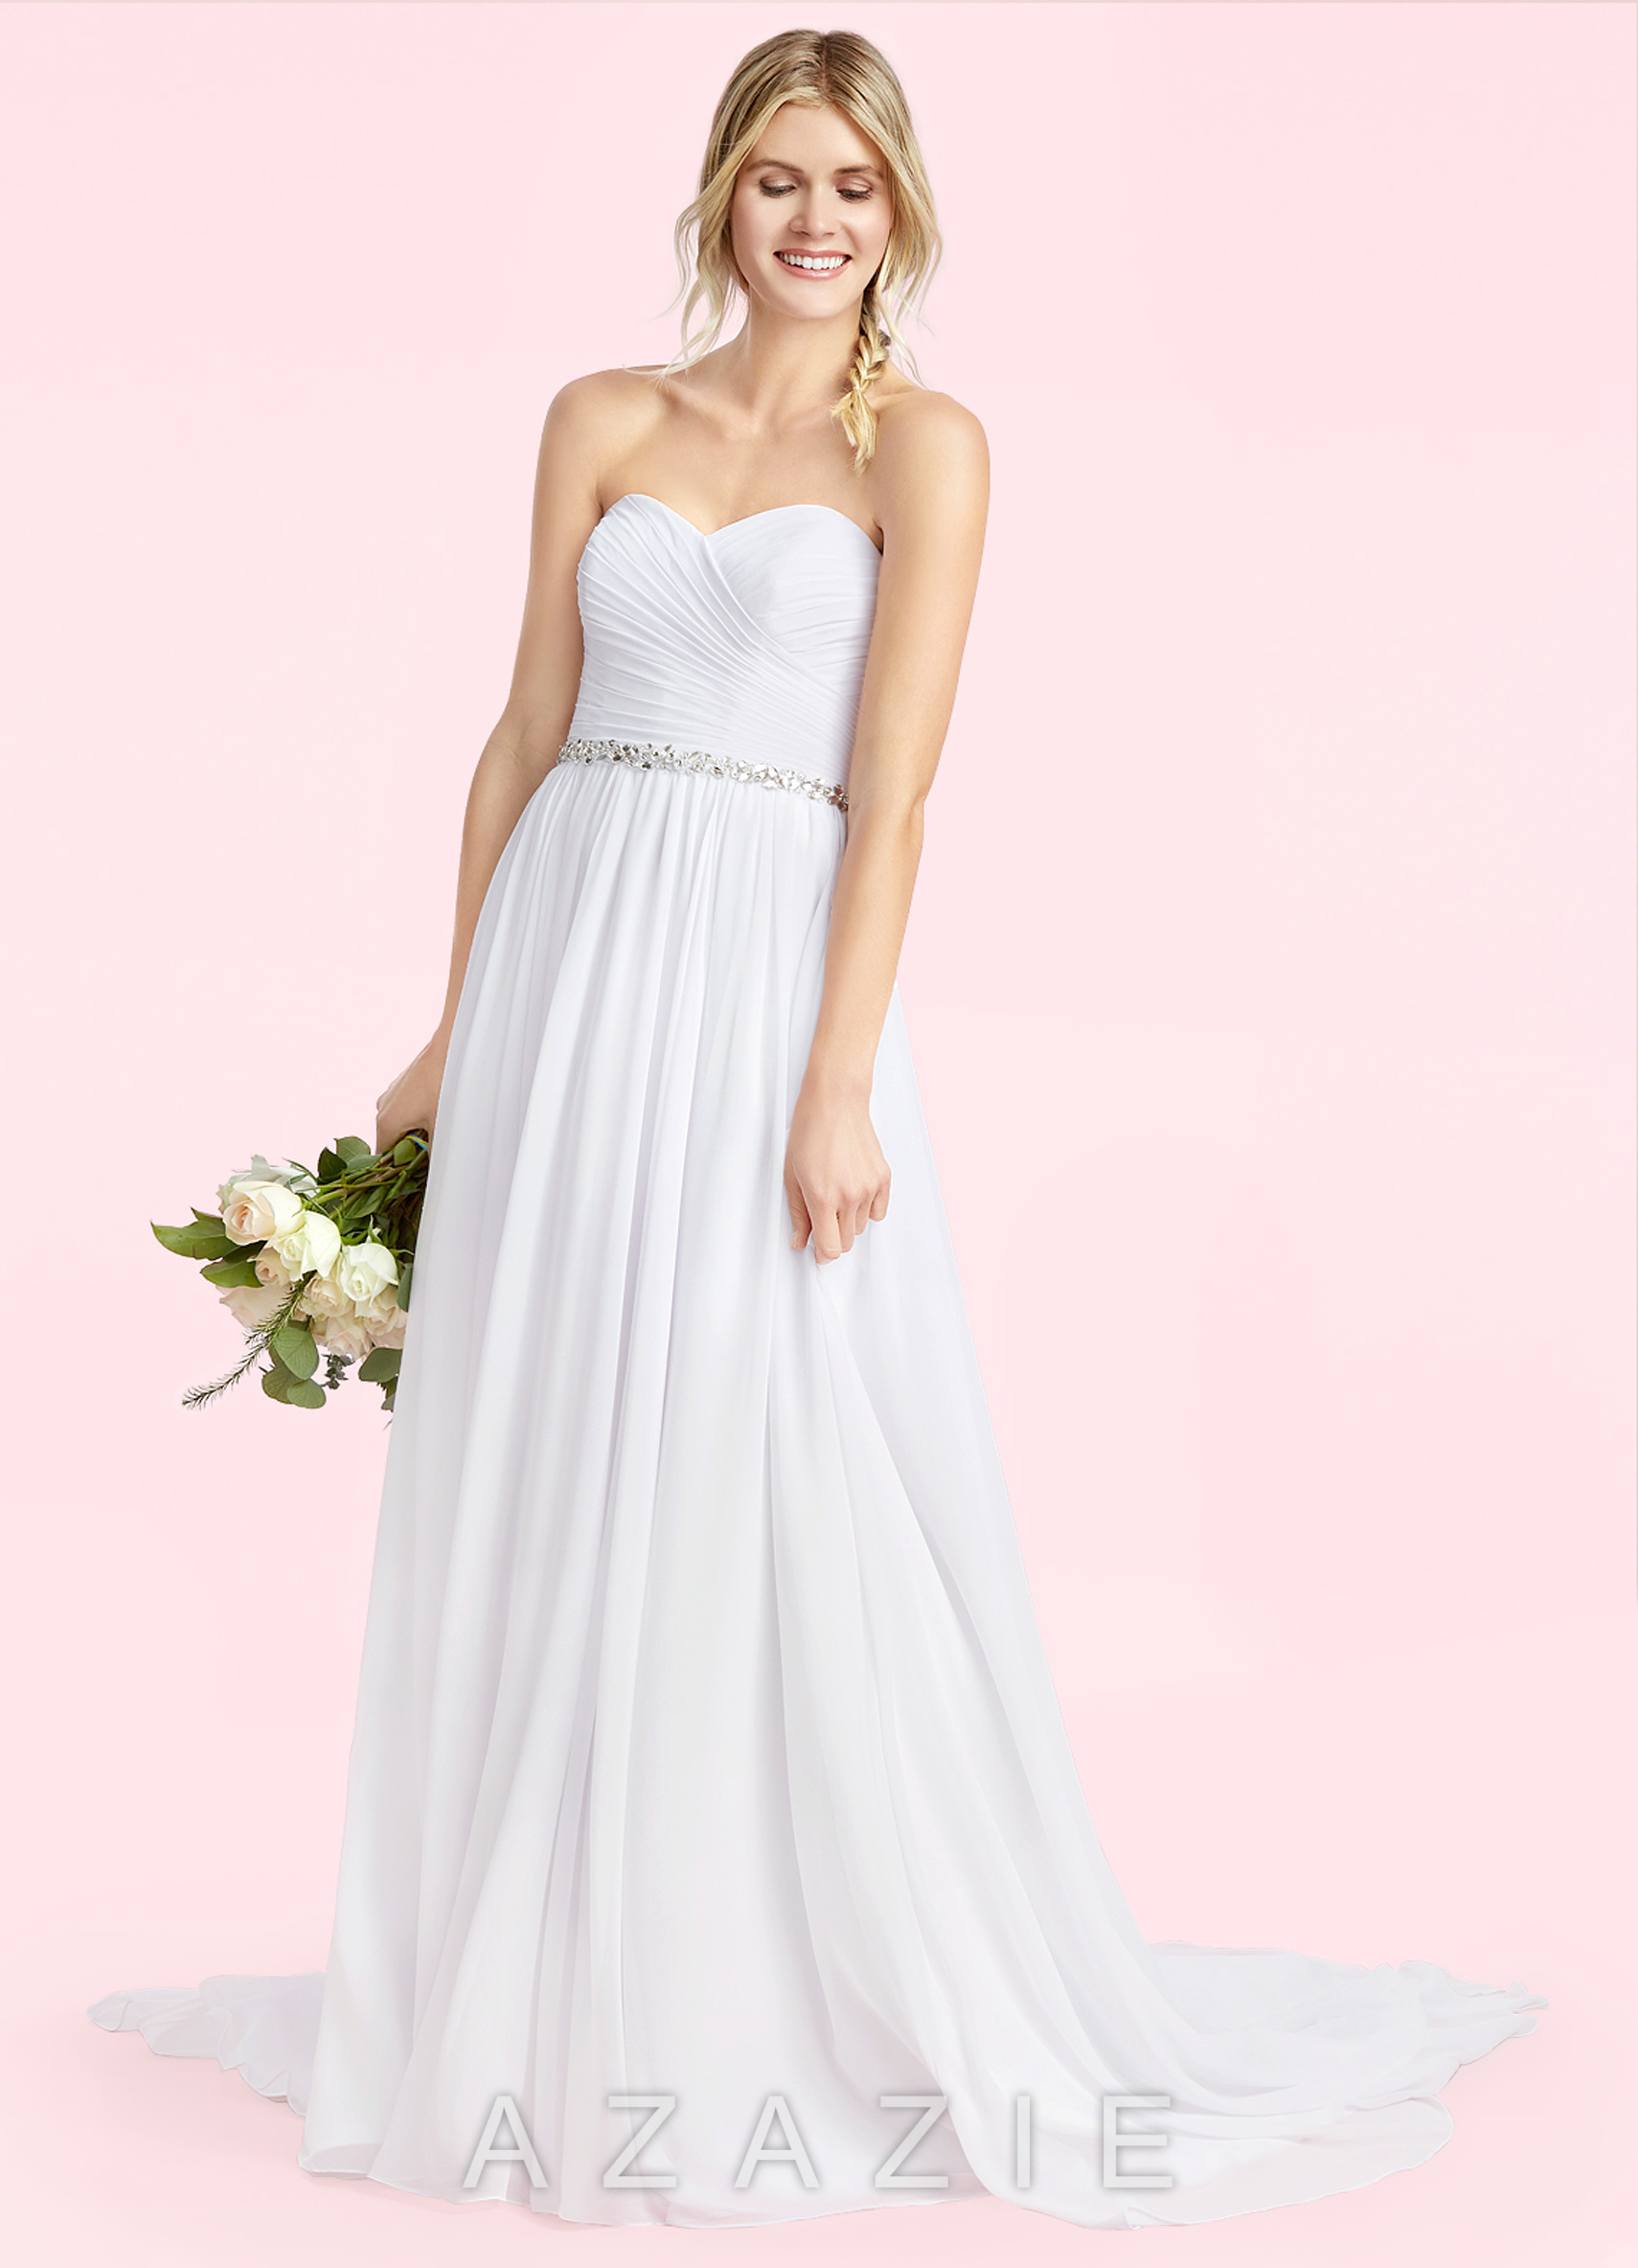 Azazie Effie BG Wedding Dress | Azazie